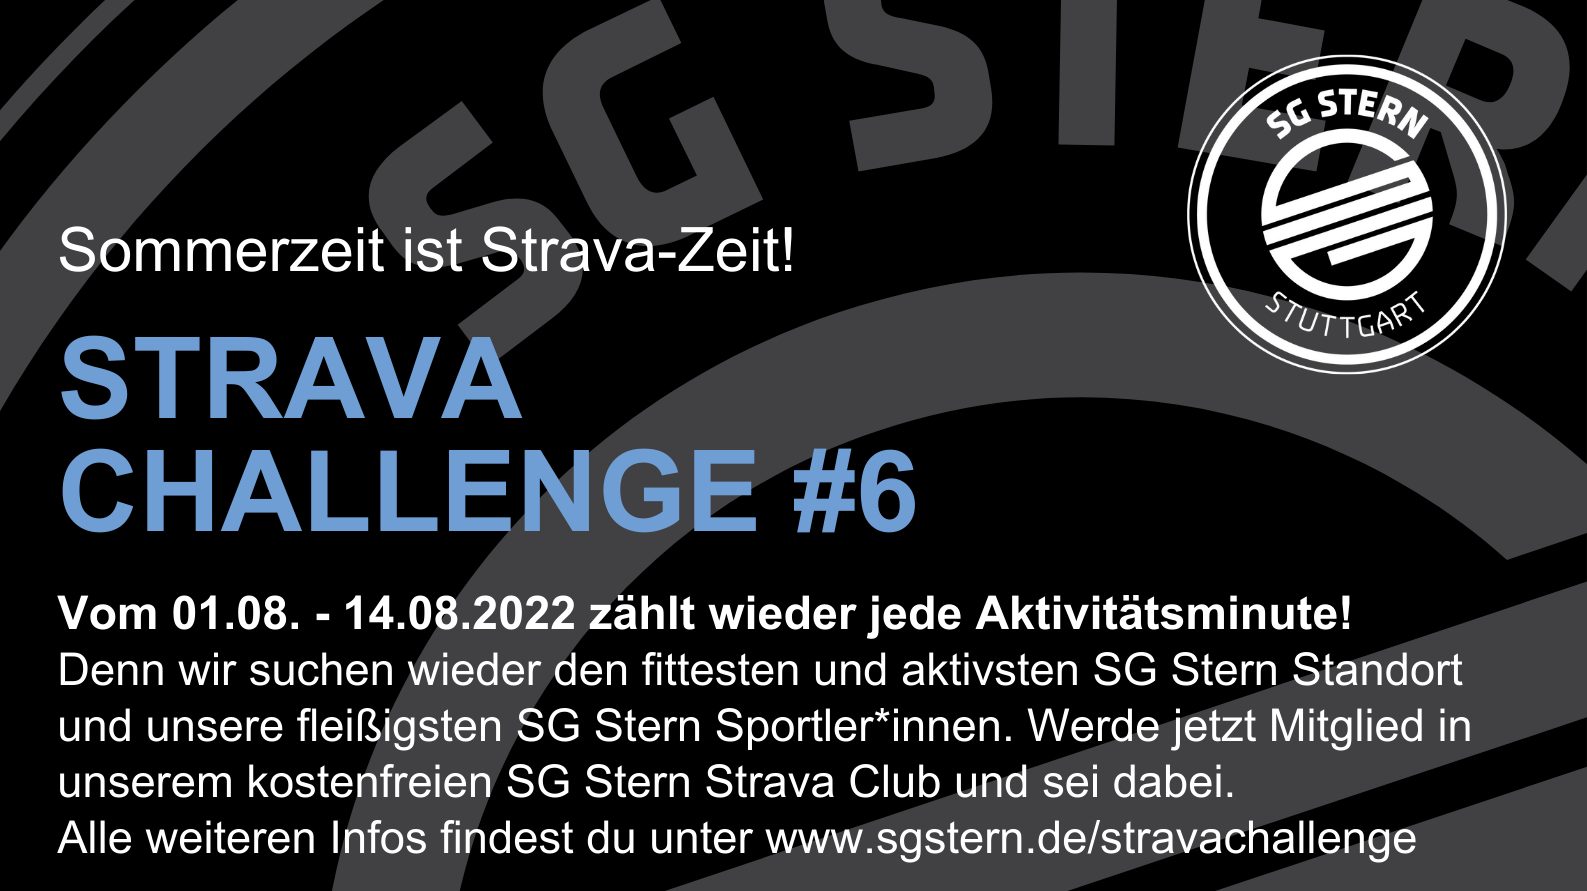 STRAVA-CHALLENGE noch bis 14.08.2022